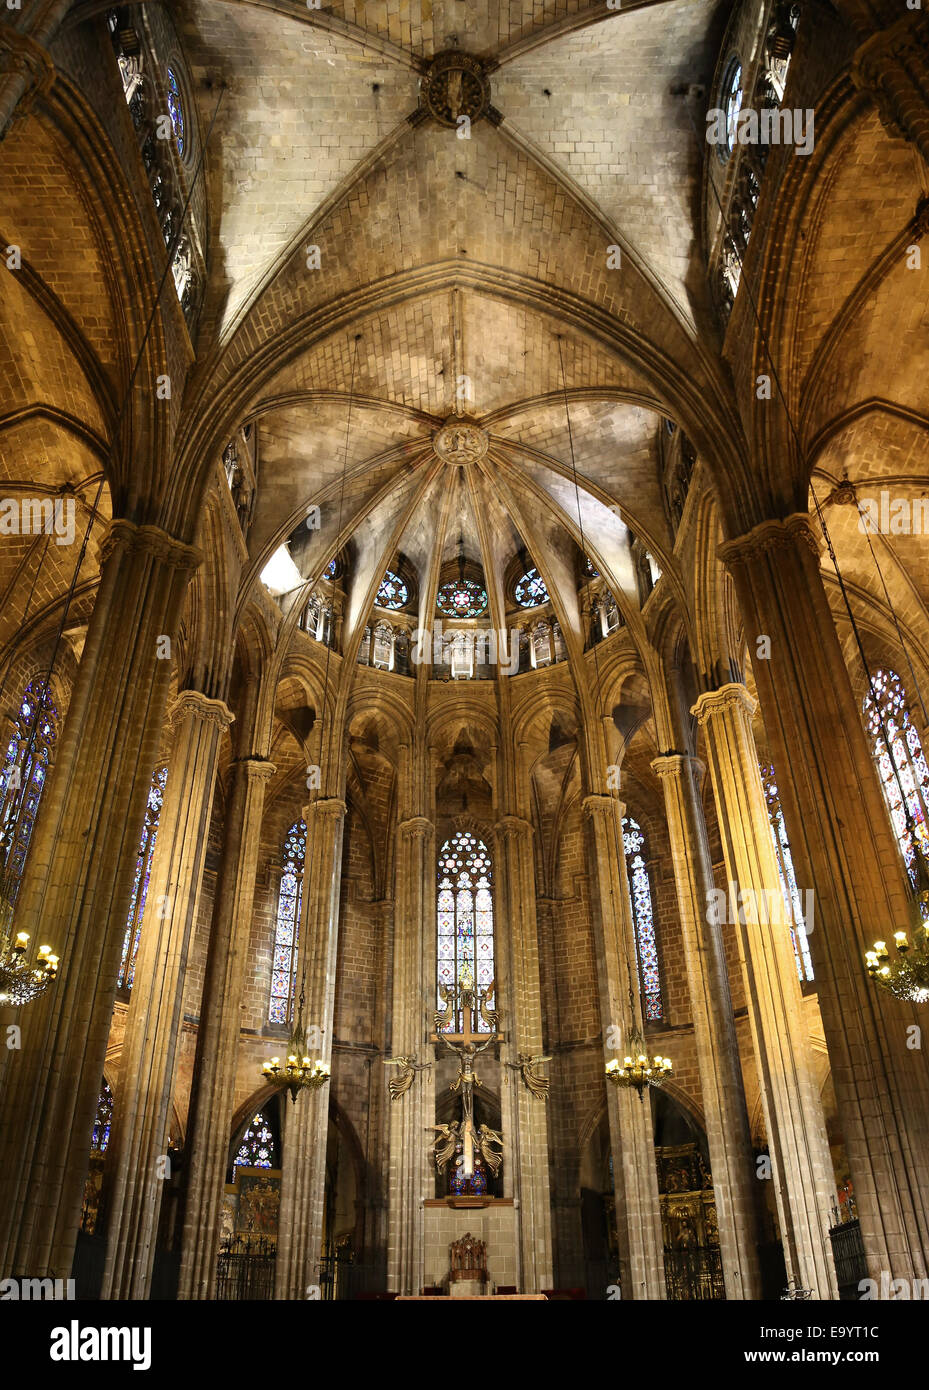 Spanien. Katalonien. Kathedrale von Barcelona. Im Inneren. Apsis. 13. Jahrhundert. Stockfoto